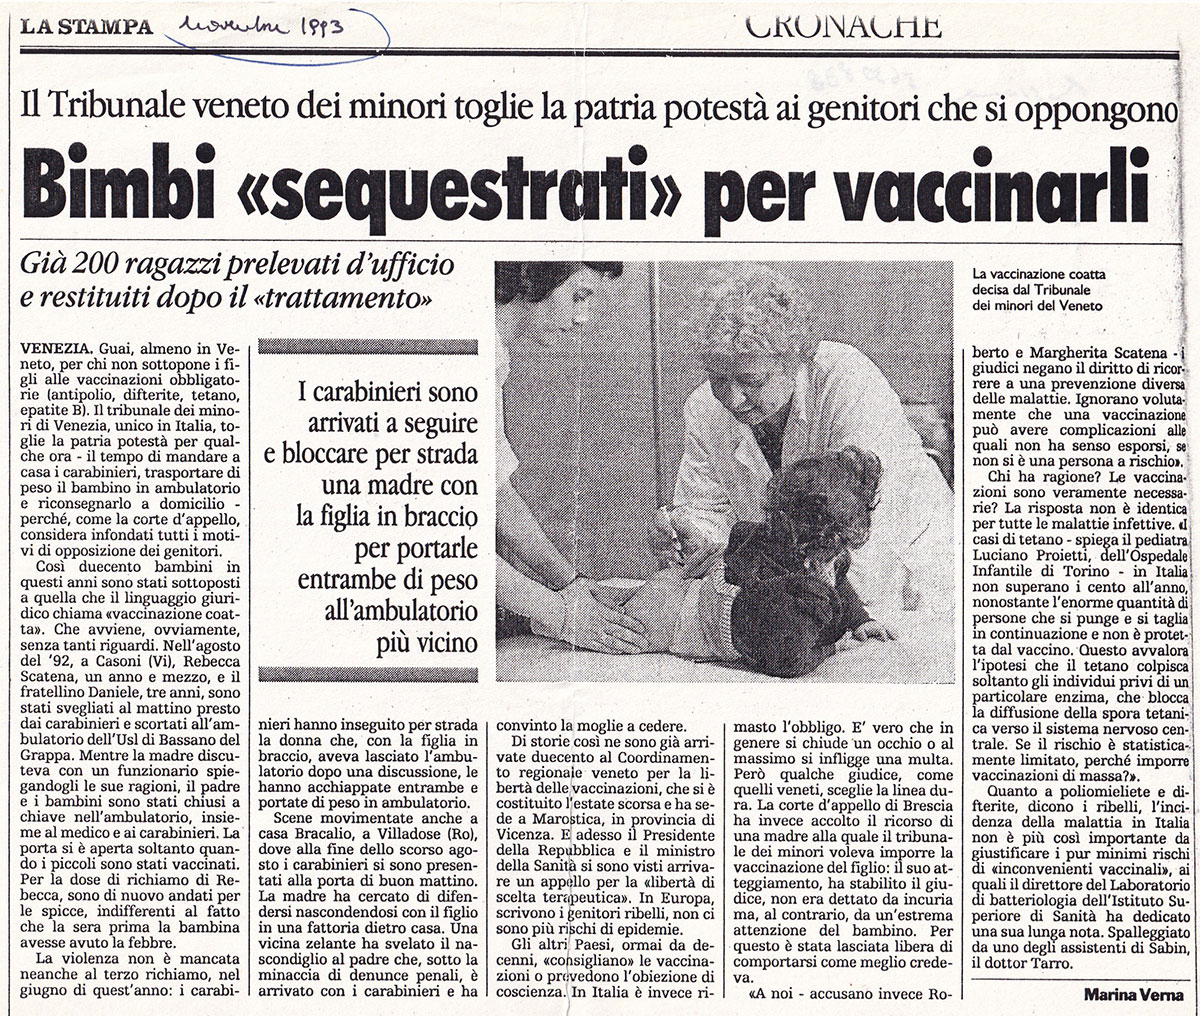 Kinder werden zur Impfung „beschlagnahmt“. La Stampa, November 1993